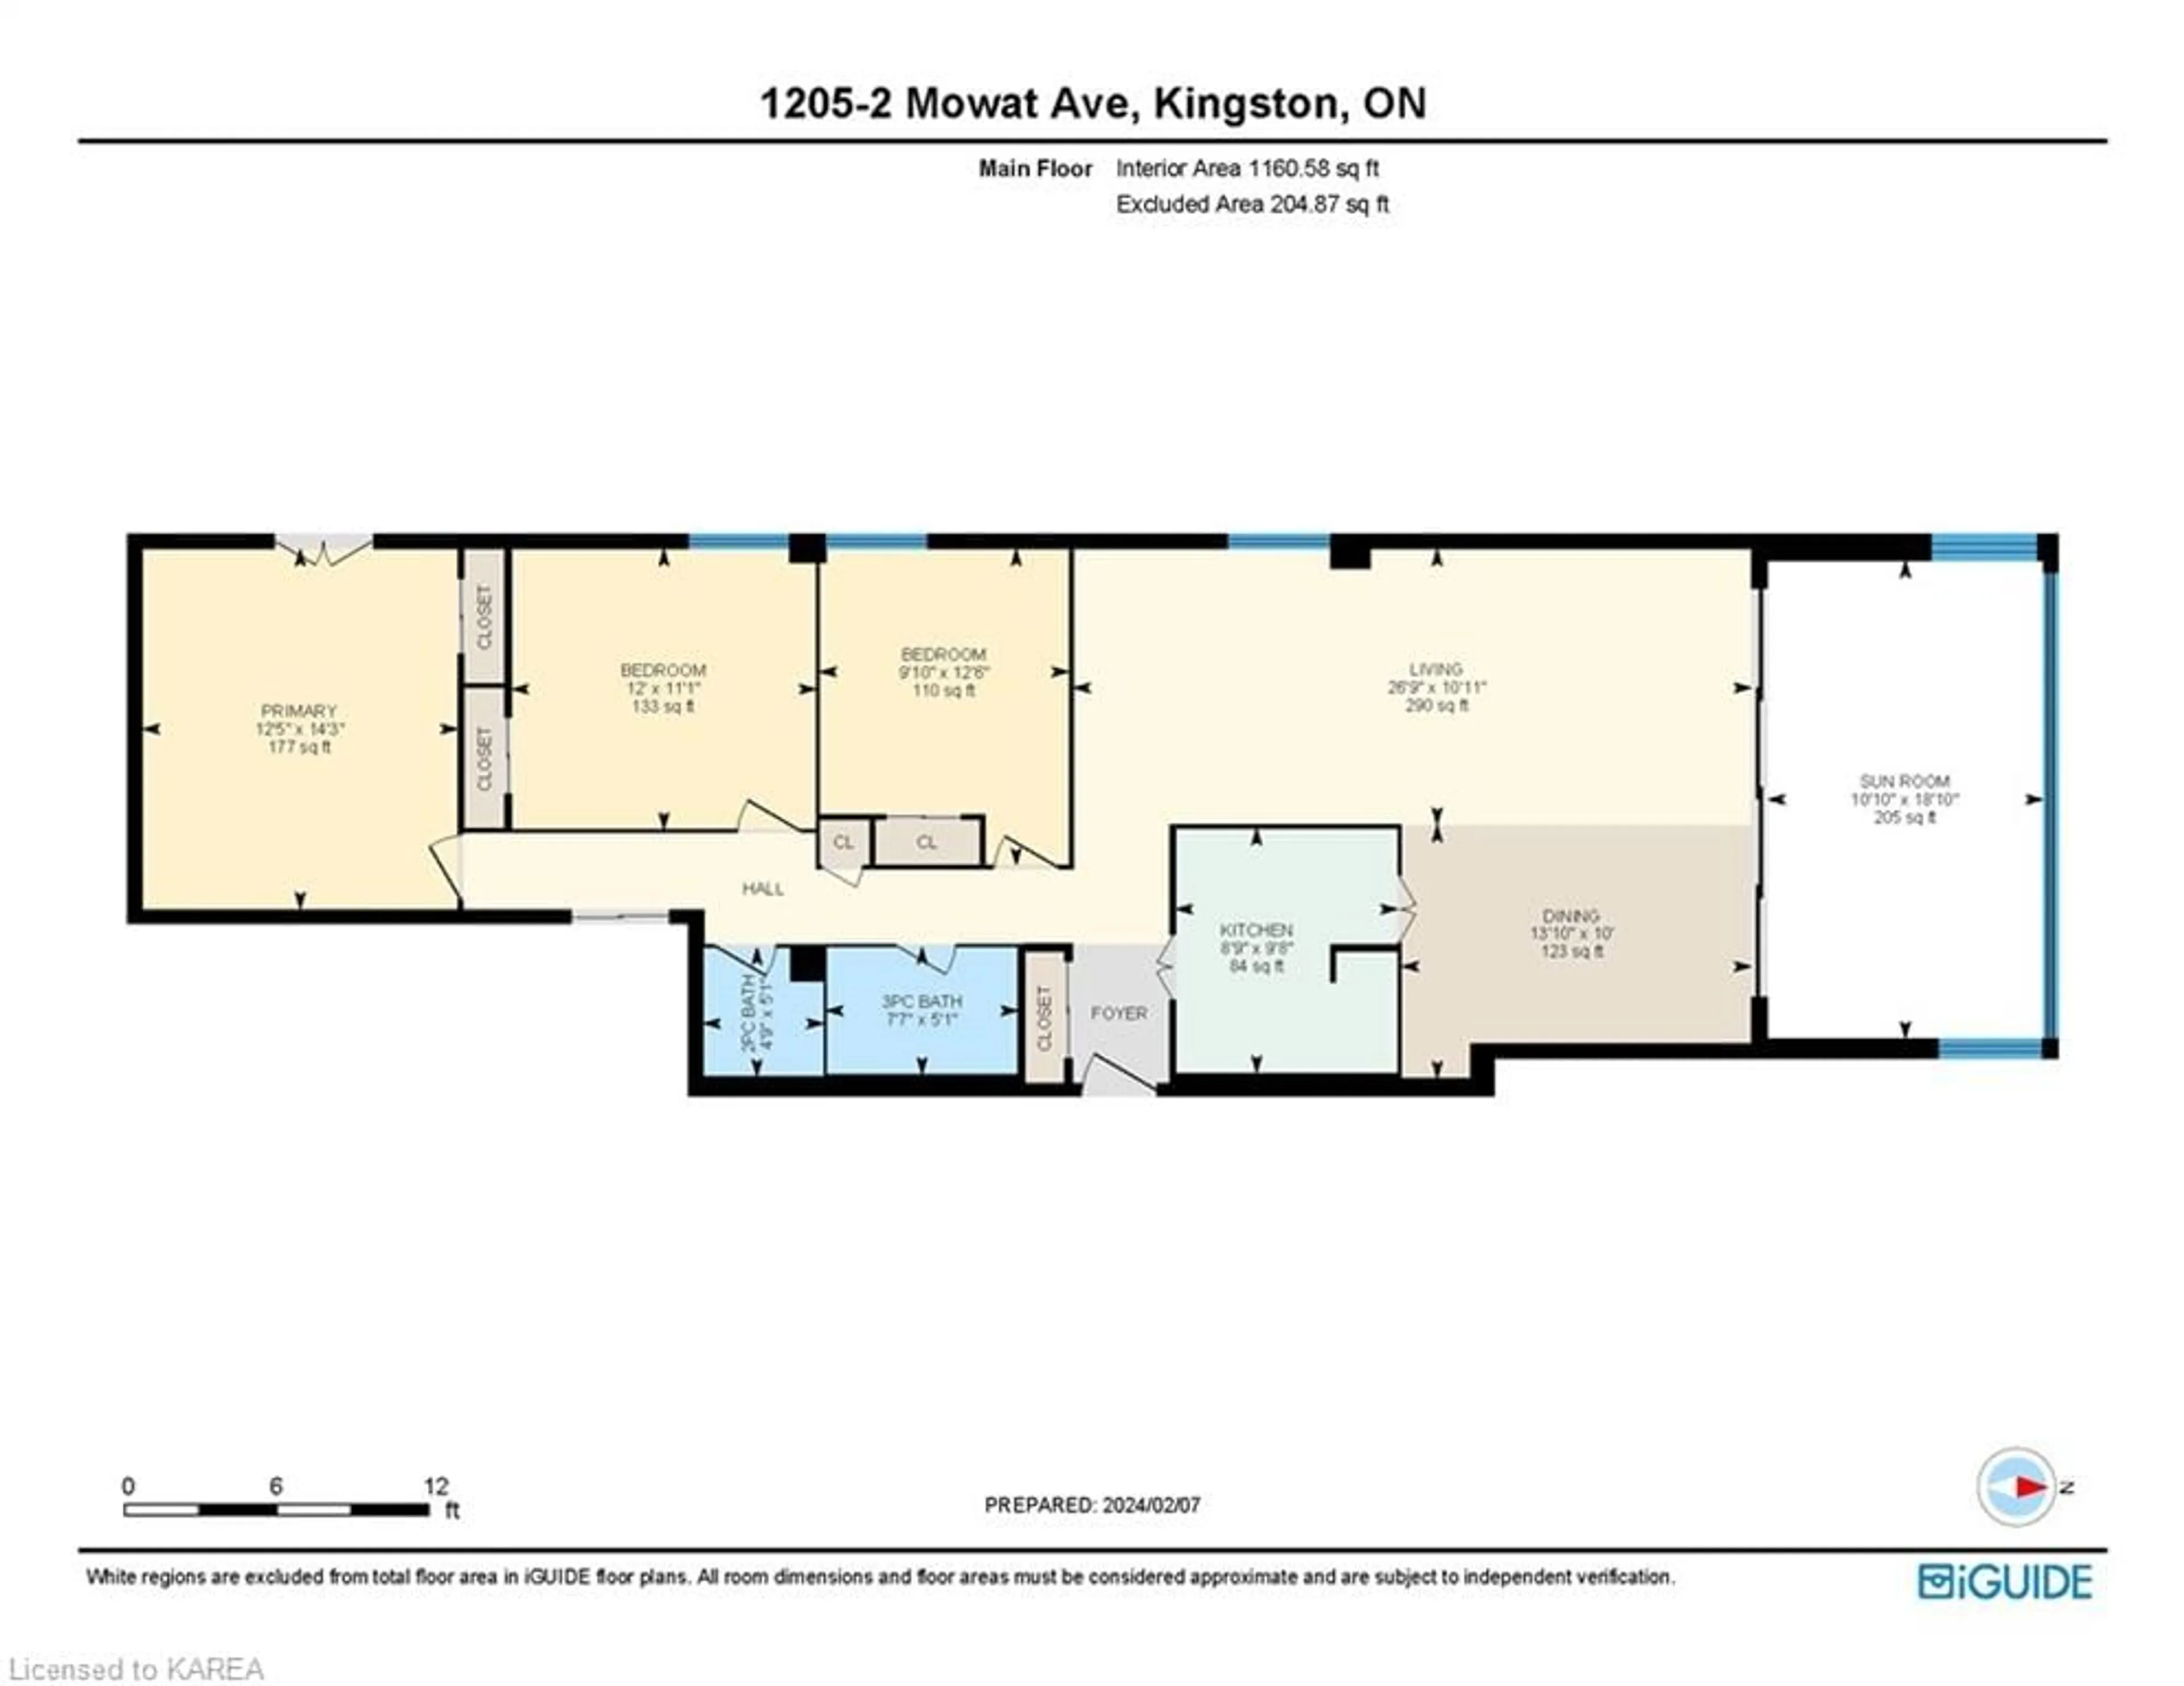 Floor plan for 2 Mowat Ave #1205, Kingston Ontario K7M 1K1